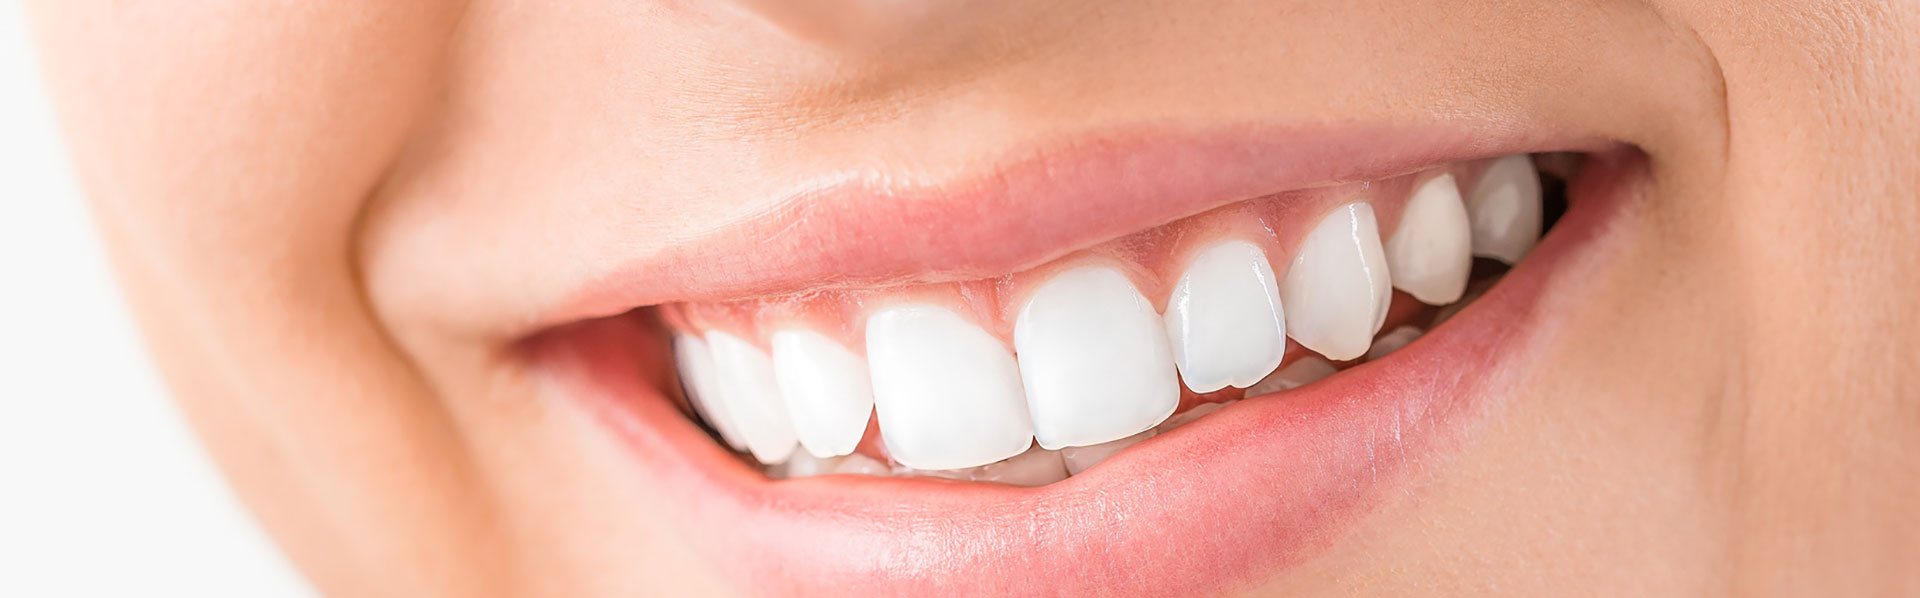 Schöne Zähne dank Zahnpflege und Kontrolle